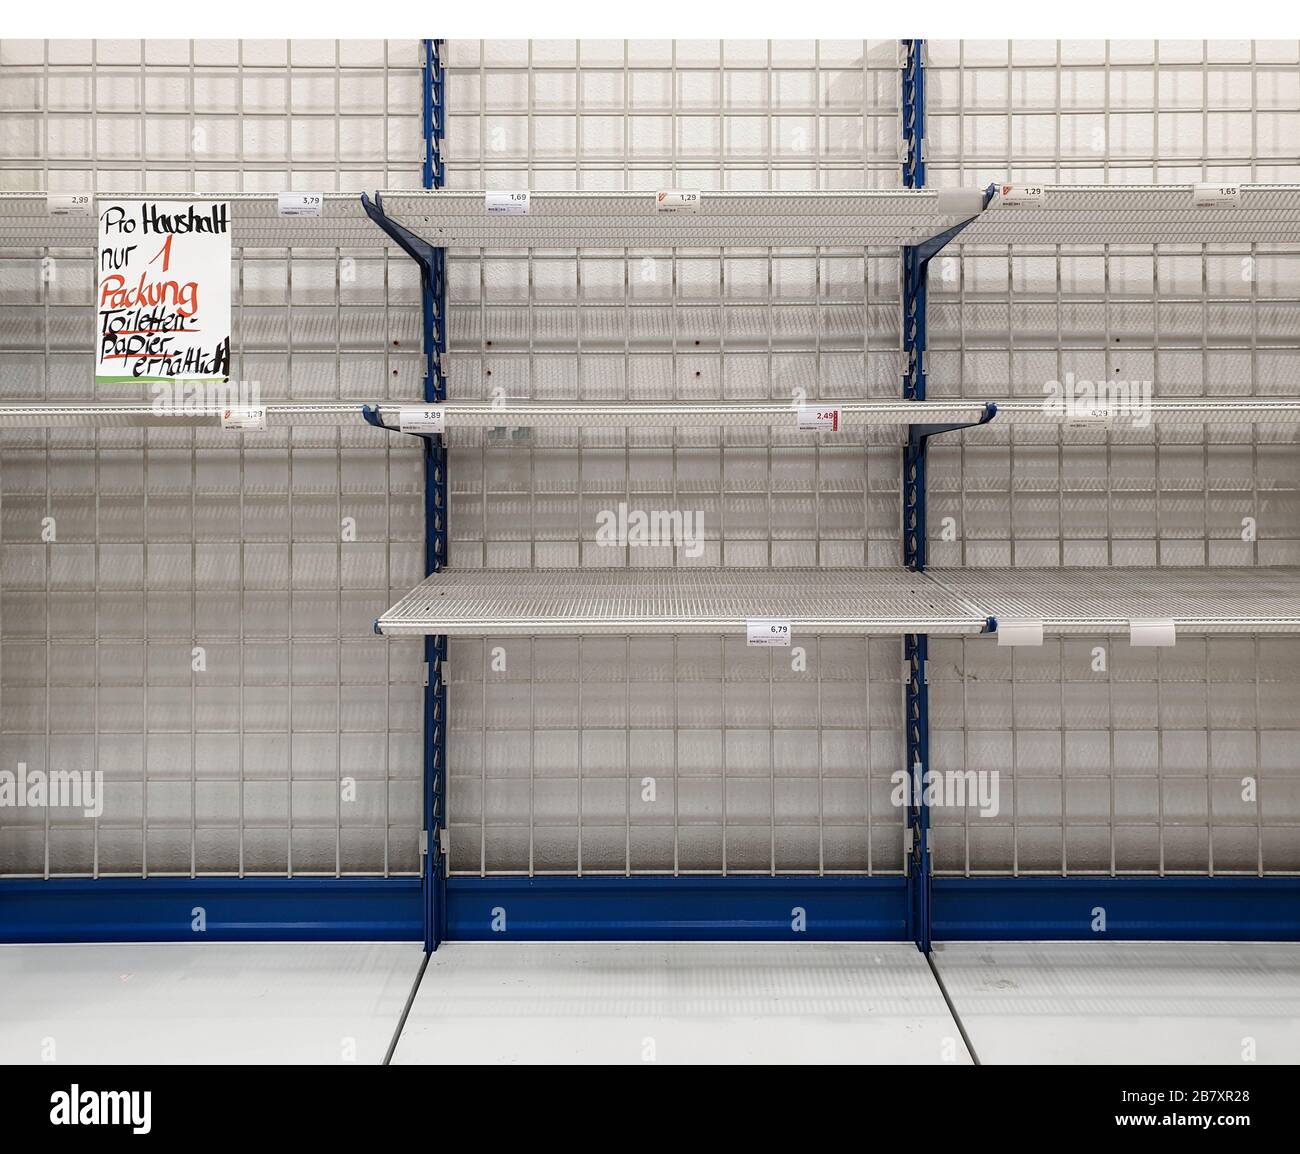 GEISLINGEN AN DER STEIGE, GERMANIA - 16 MARZO 2020: Supermercato con scaffale vuoto che limita la carta igienica ('un solo pacco di carta igienica per famiglia') Foto Stock